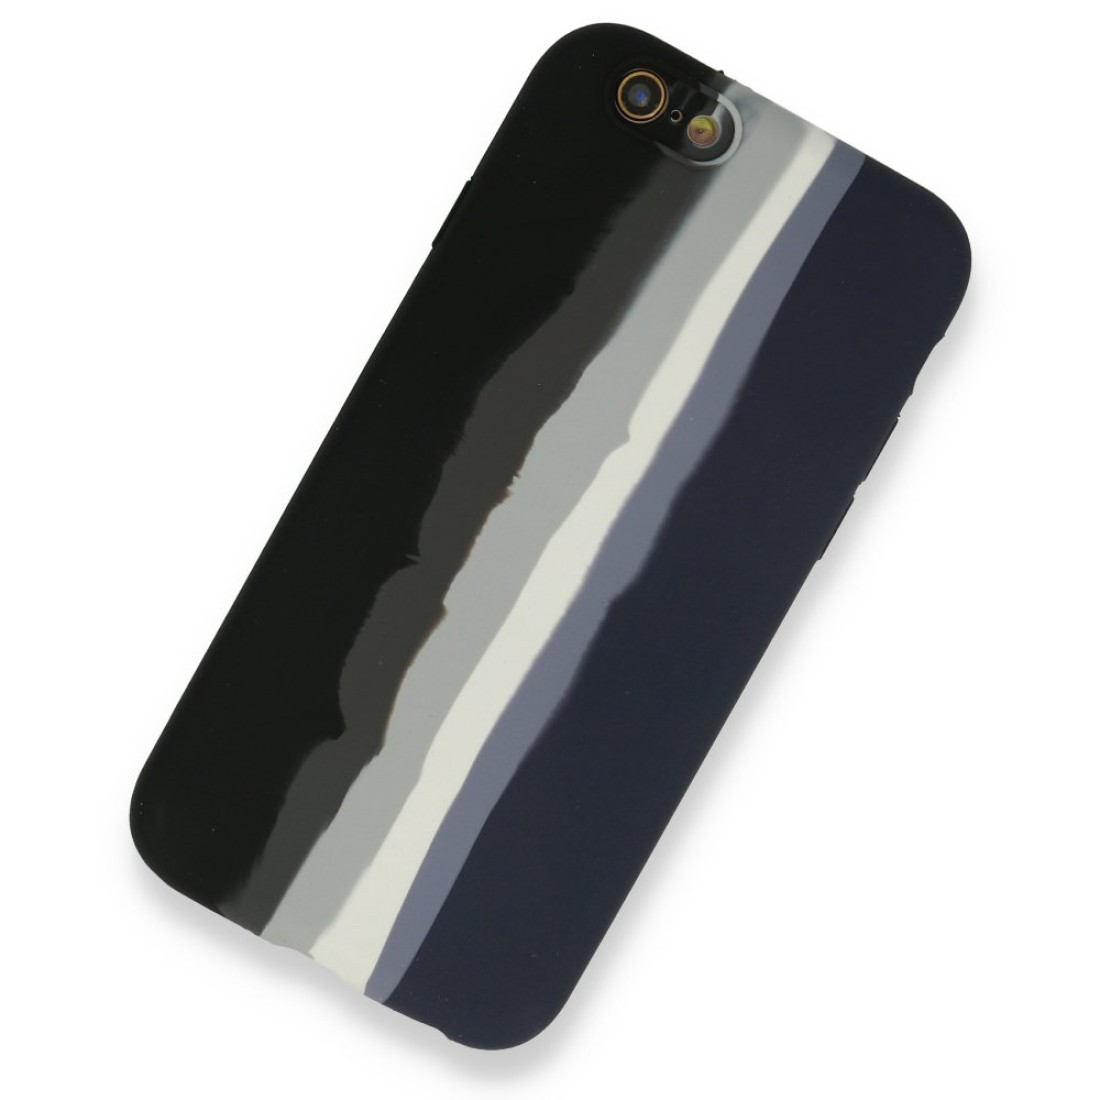 Apple iPhone 6 Kılıf Ebruli Lansman Silikon - Siyah-Lacivert